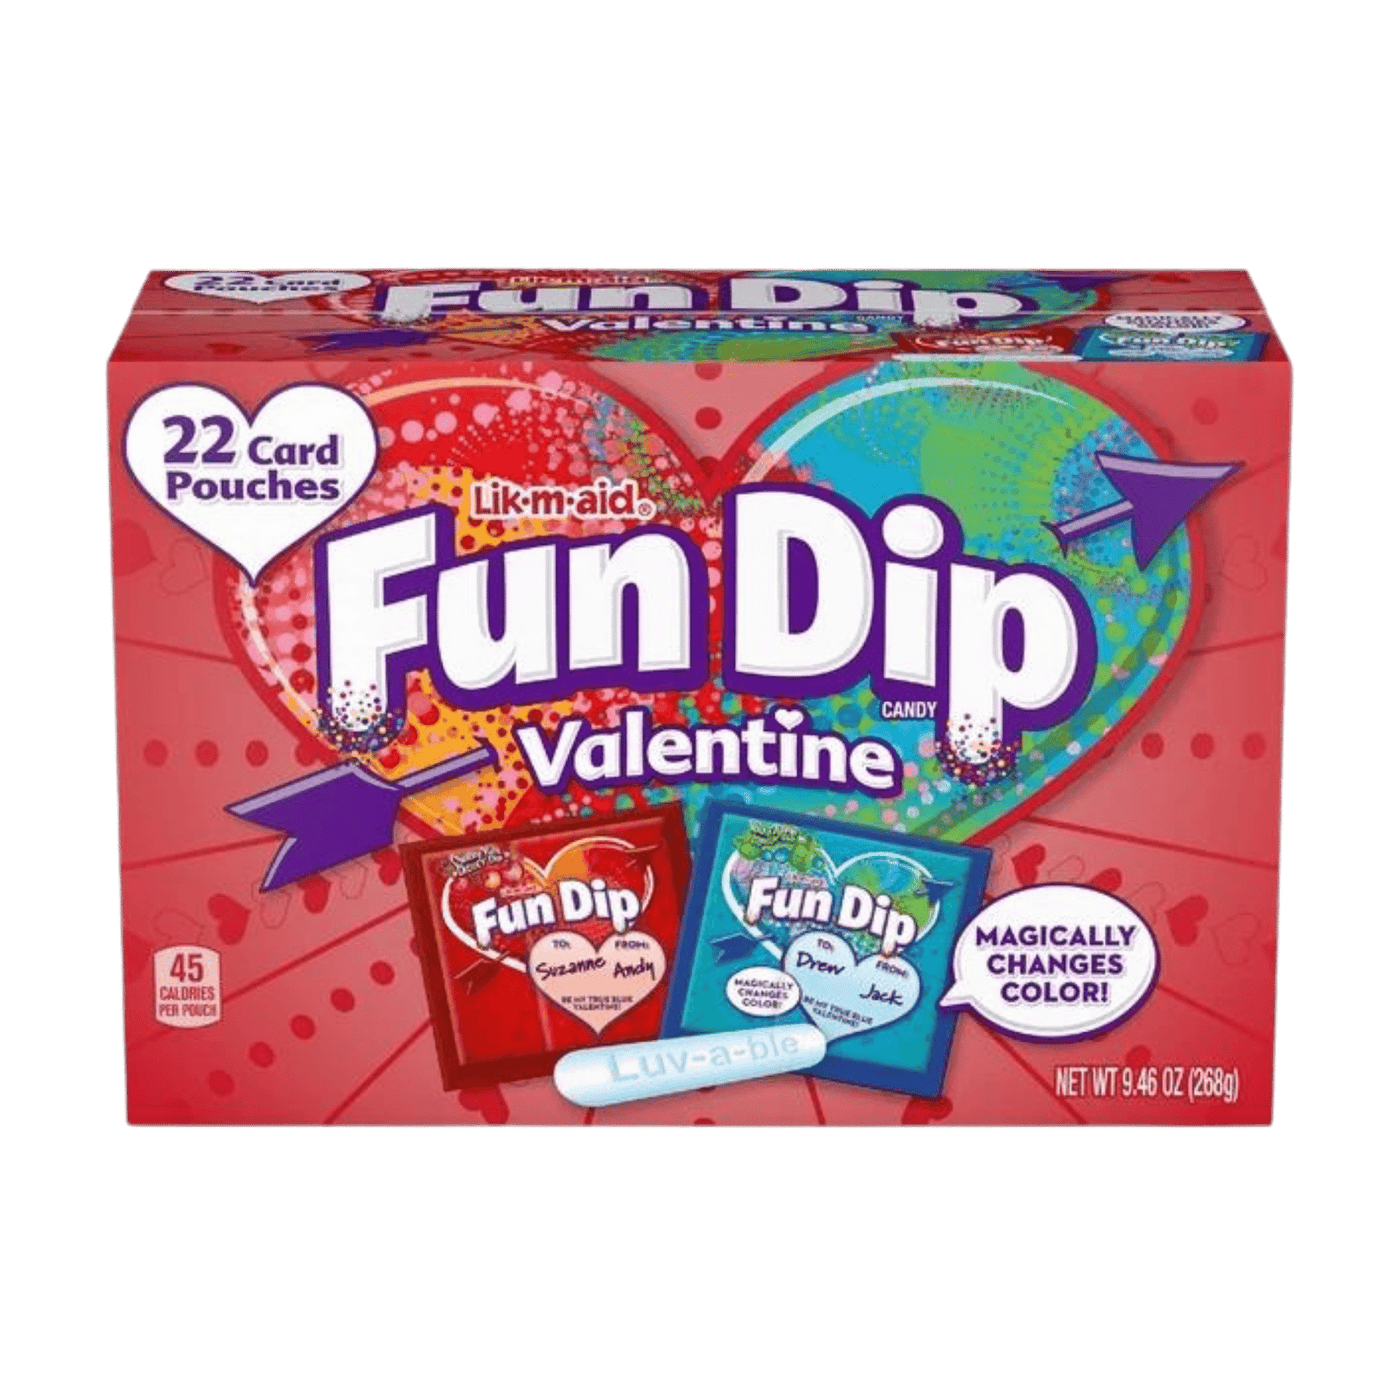 Fun Dip Valentine